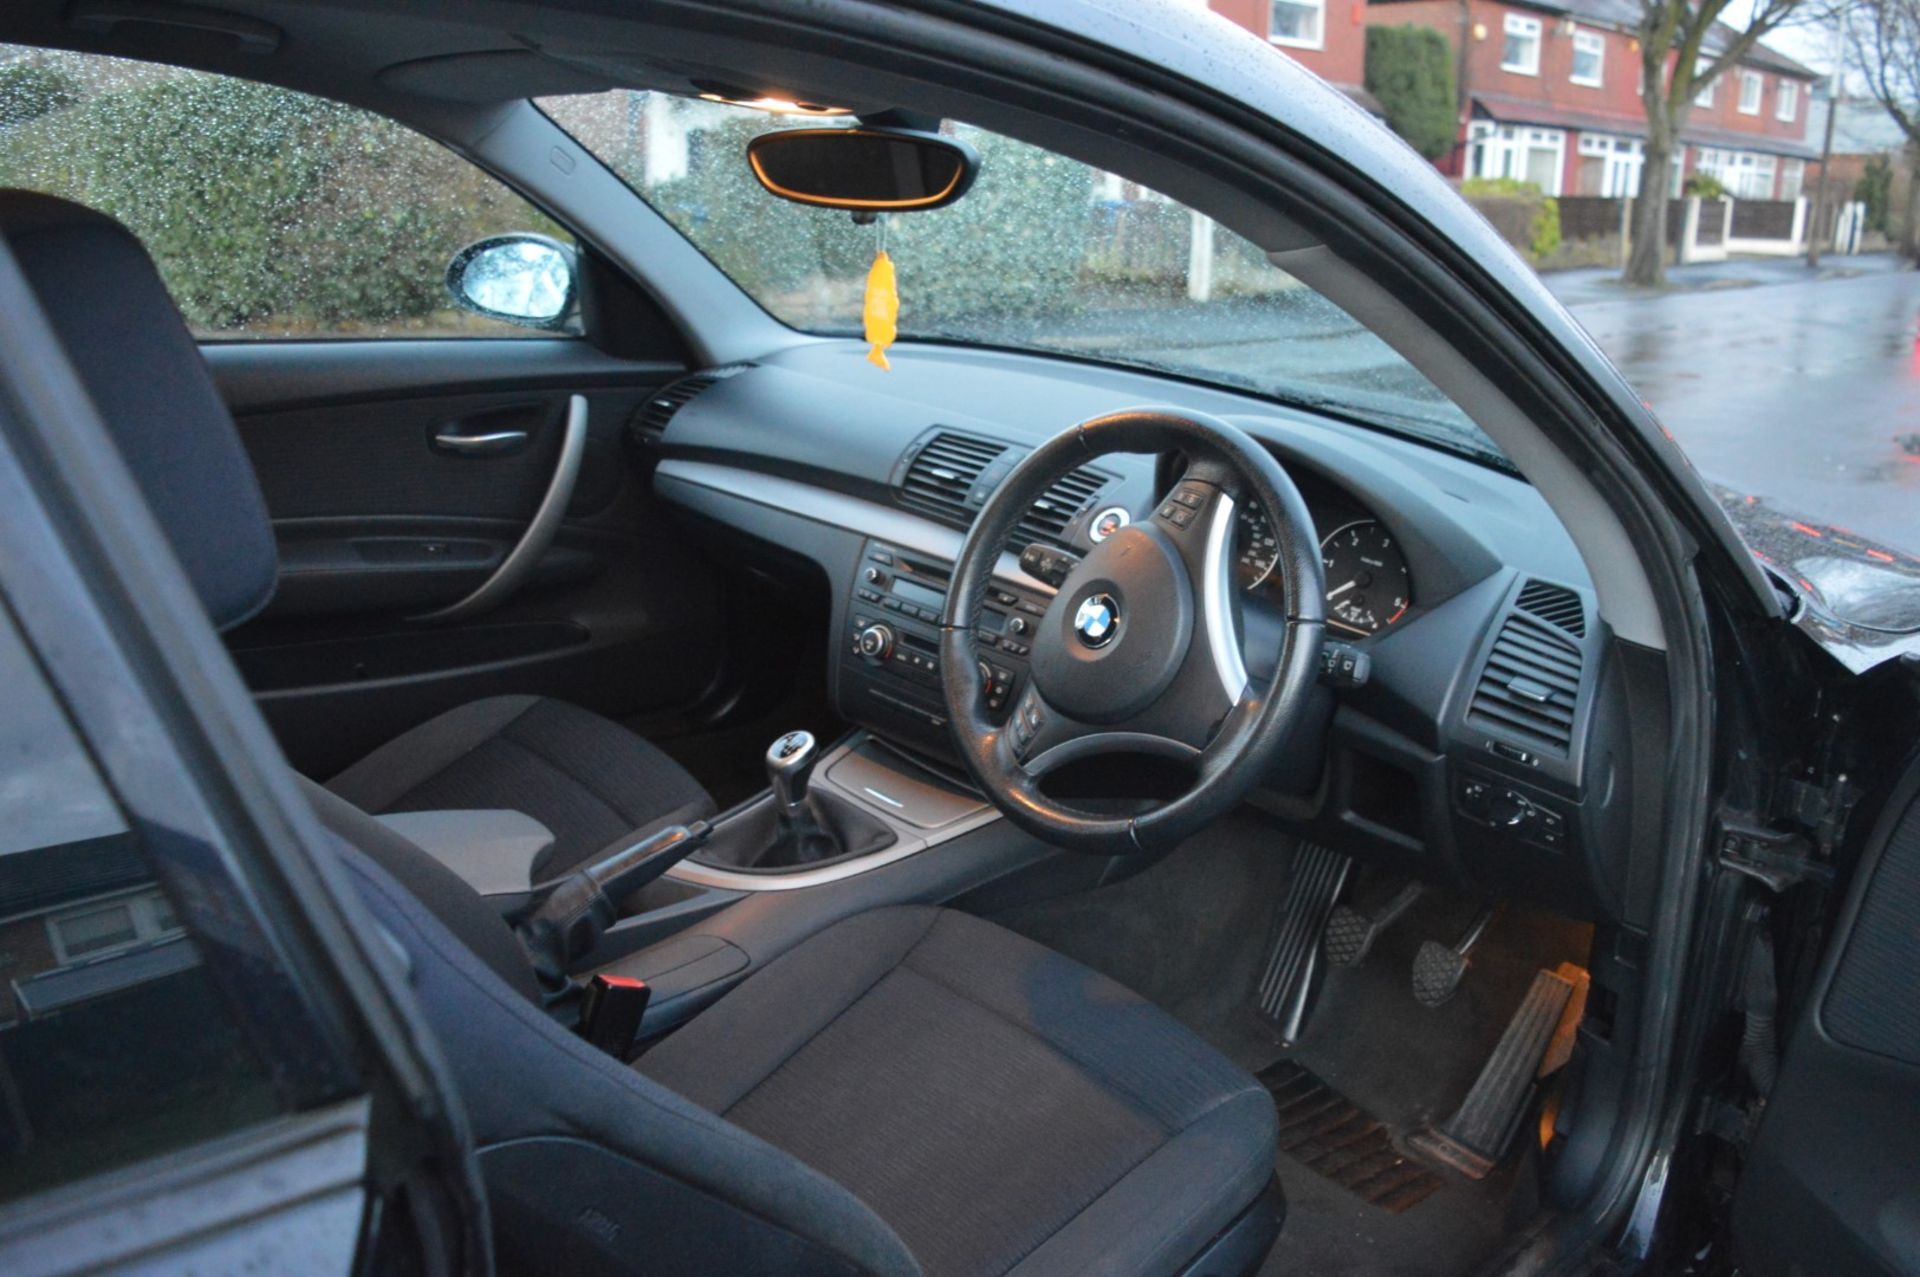 1 x 2008 BMW 1 Series 118d 3 Door Black 2l - £30 Per Year Road Tax - MOT Until January 2020 - - Image 29 of 31